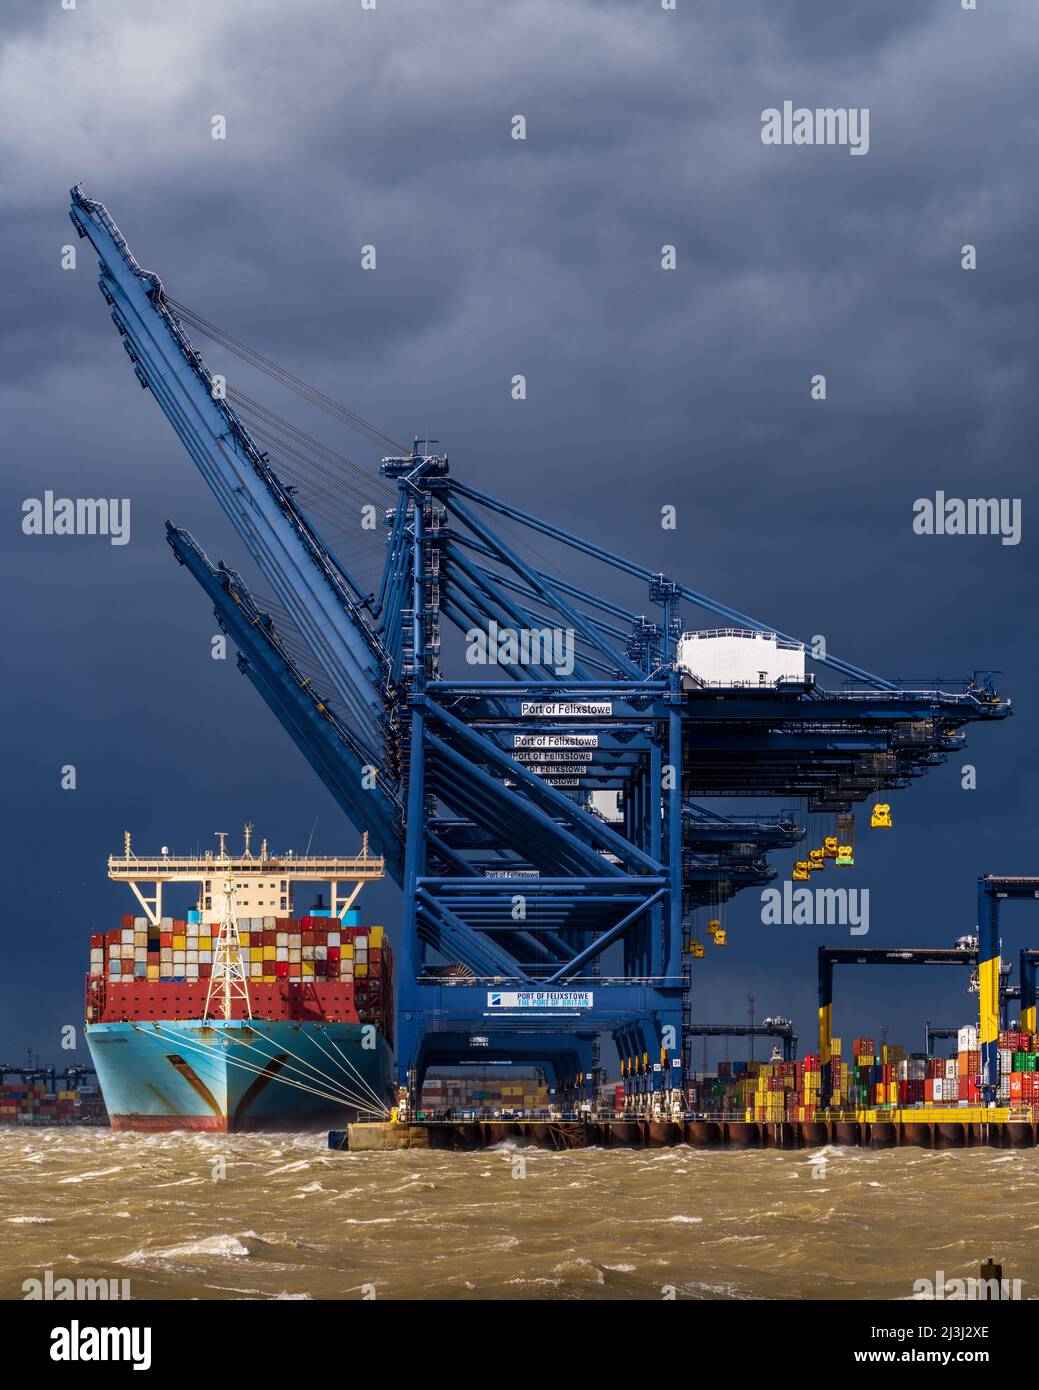 Problemi del commercio mondiale. Qualsiasi porta in una tempesta. Lo scarico dei container si ferma durante una tempesta al porto di Felixstowe, il più grande porto per container del Regno Unito. Foto Stock